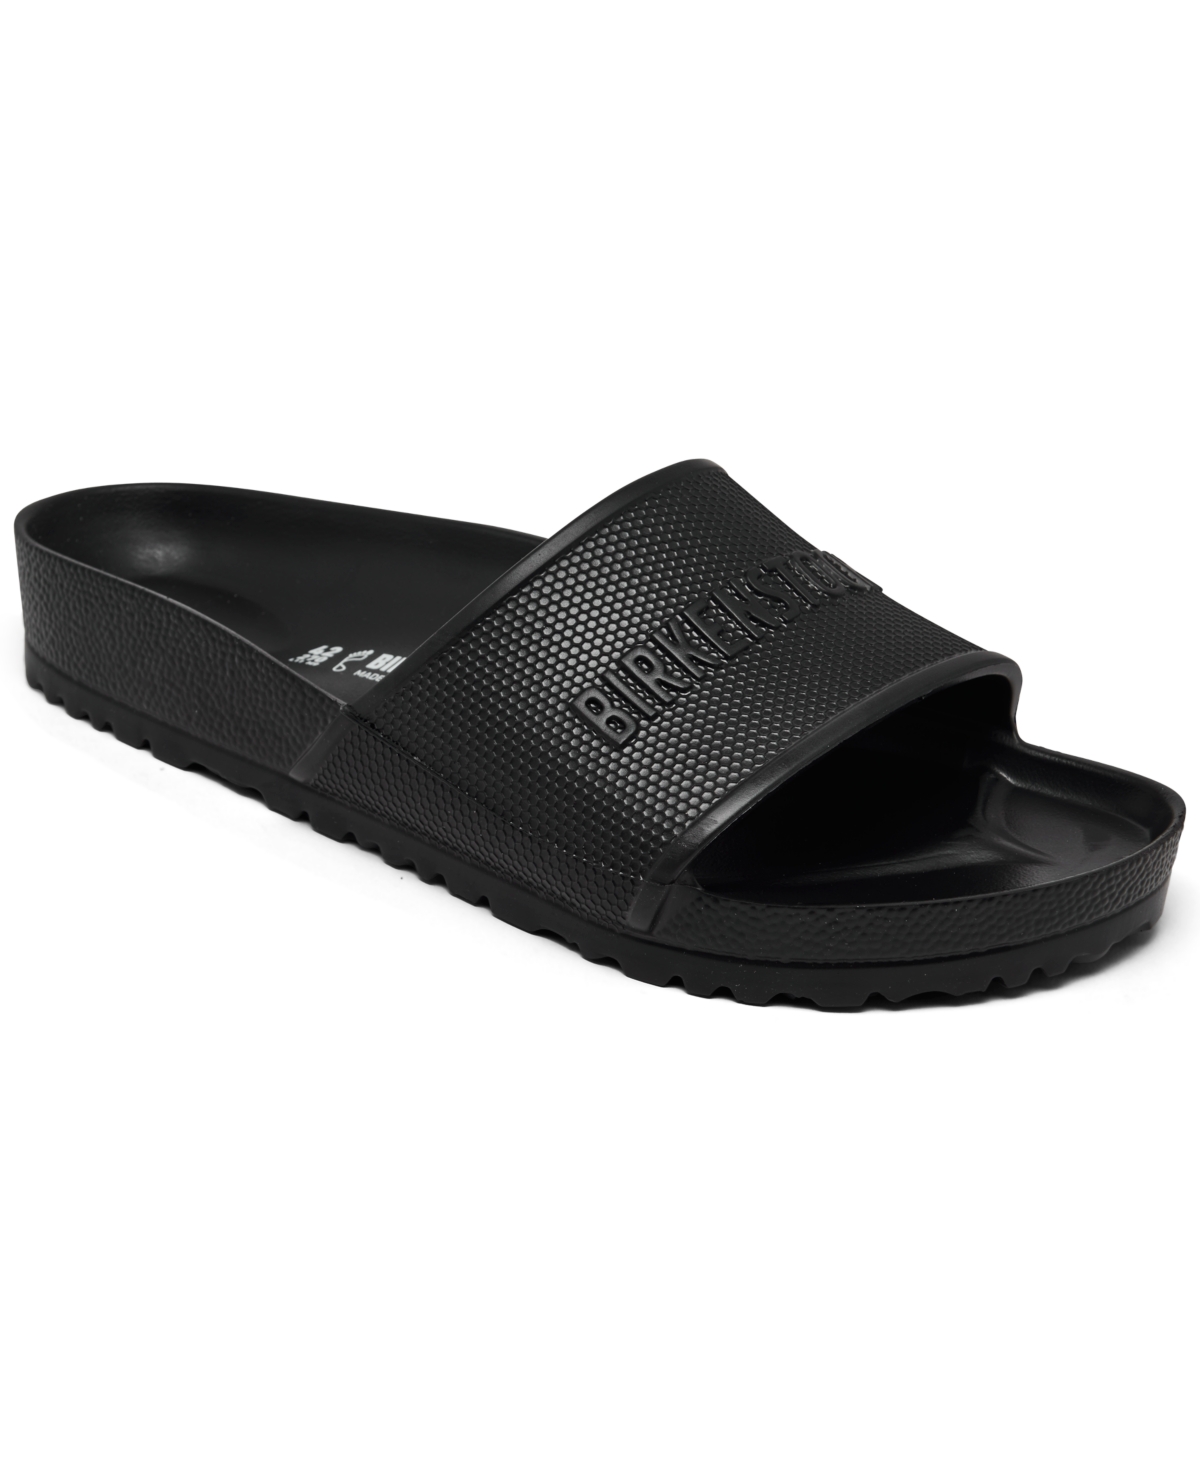 Men's Barbados Slide Sandals from Finish Line - Black